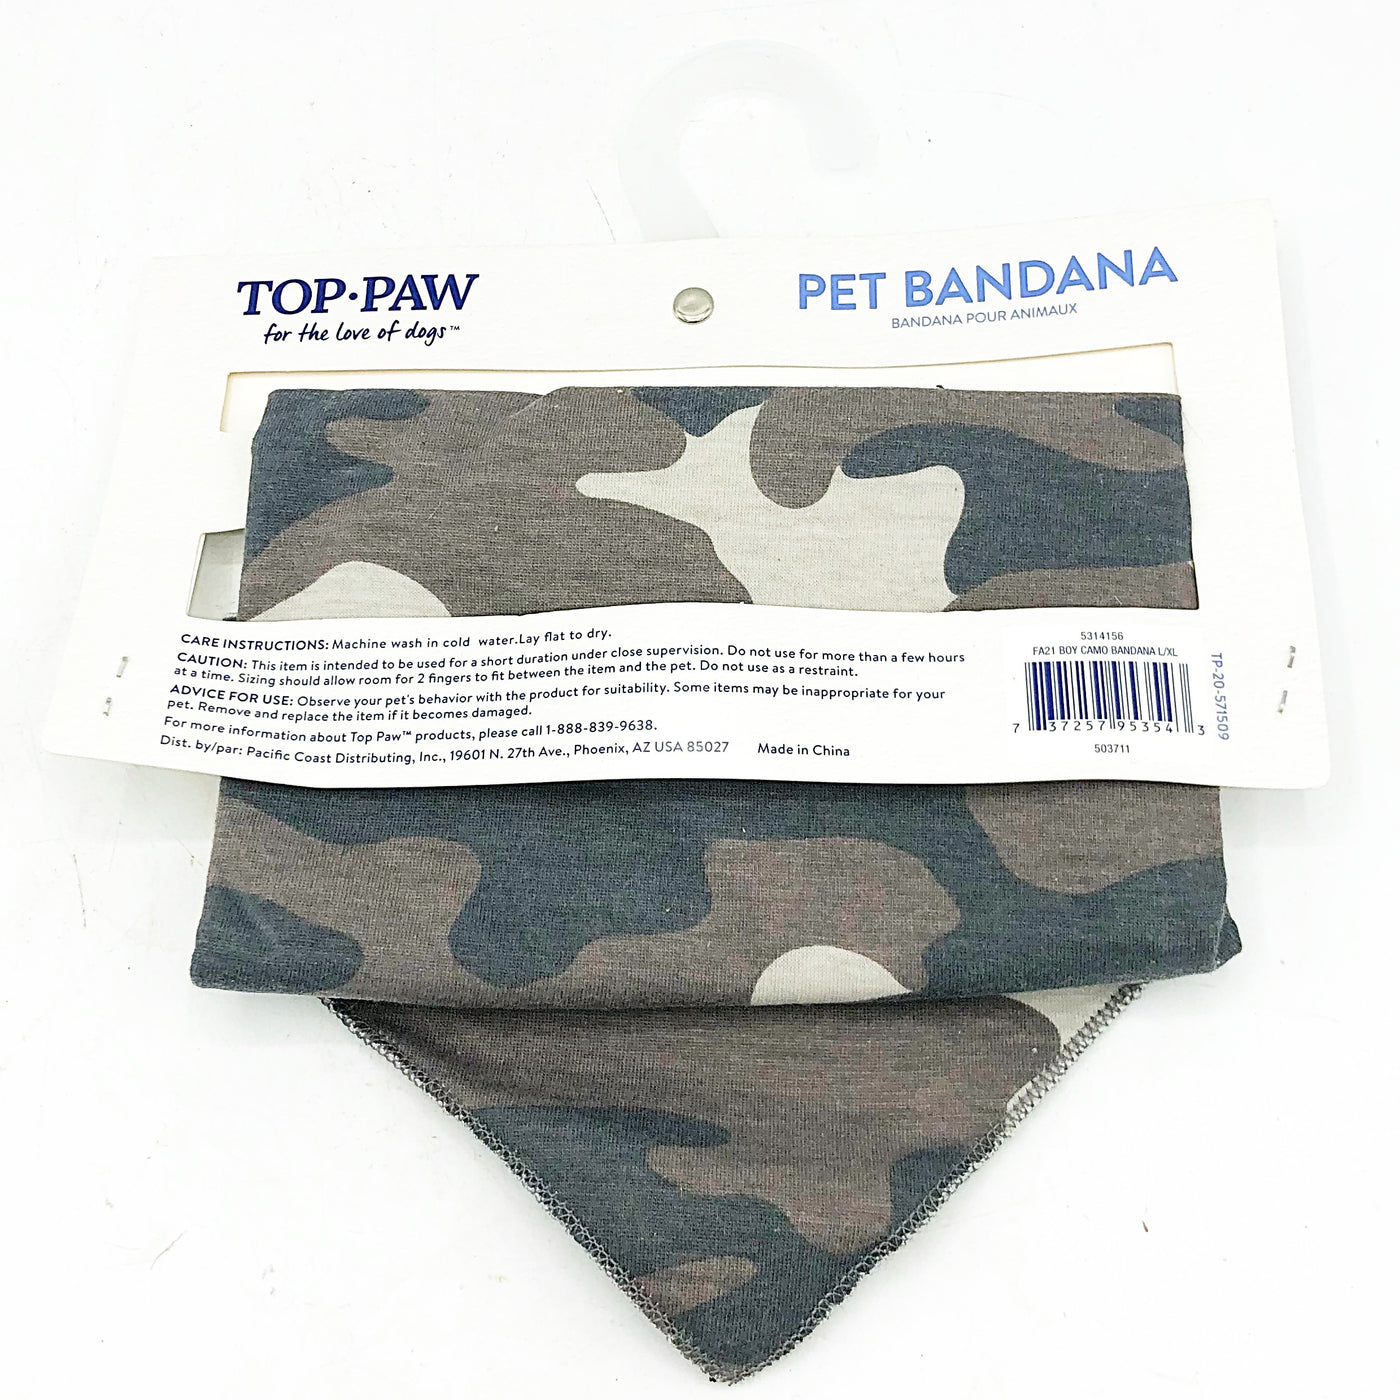 Top Paw Camouflage Dog Bandana Large - XL